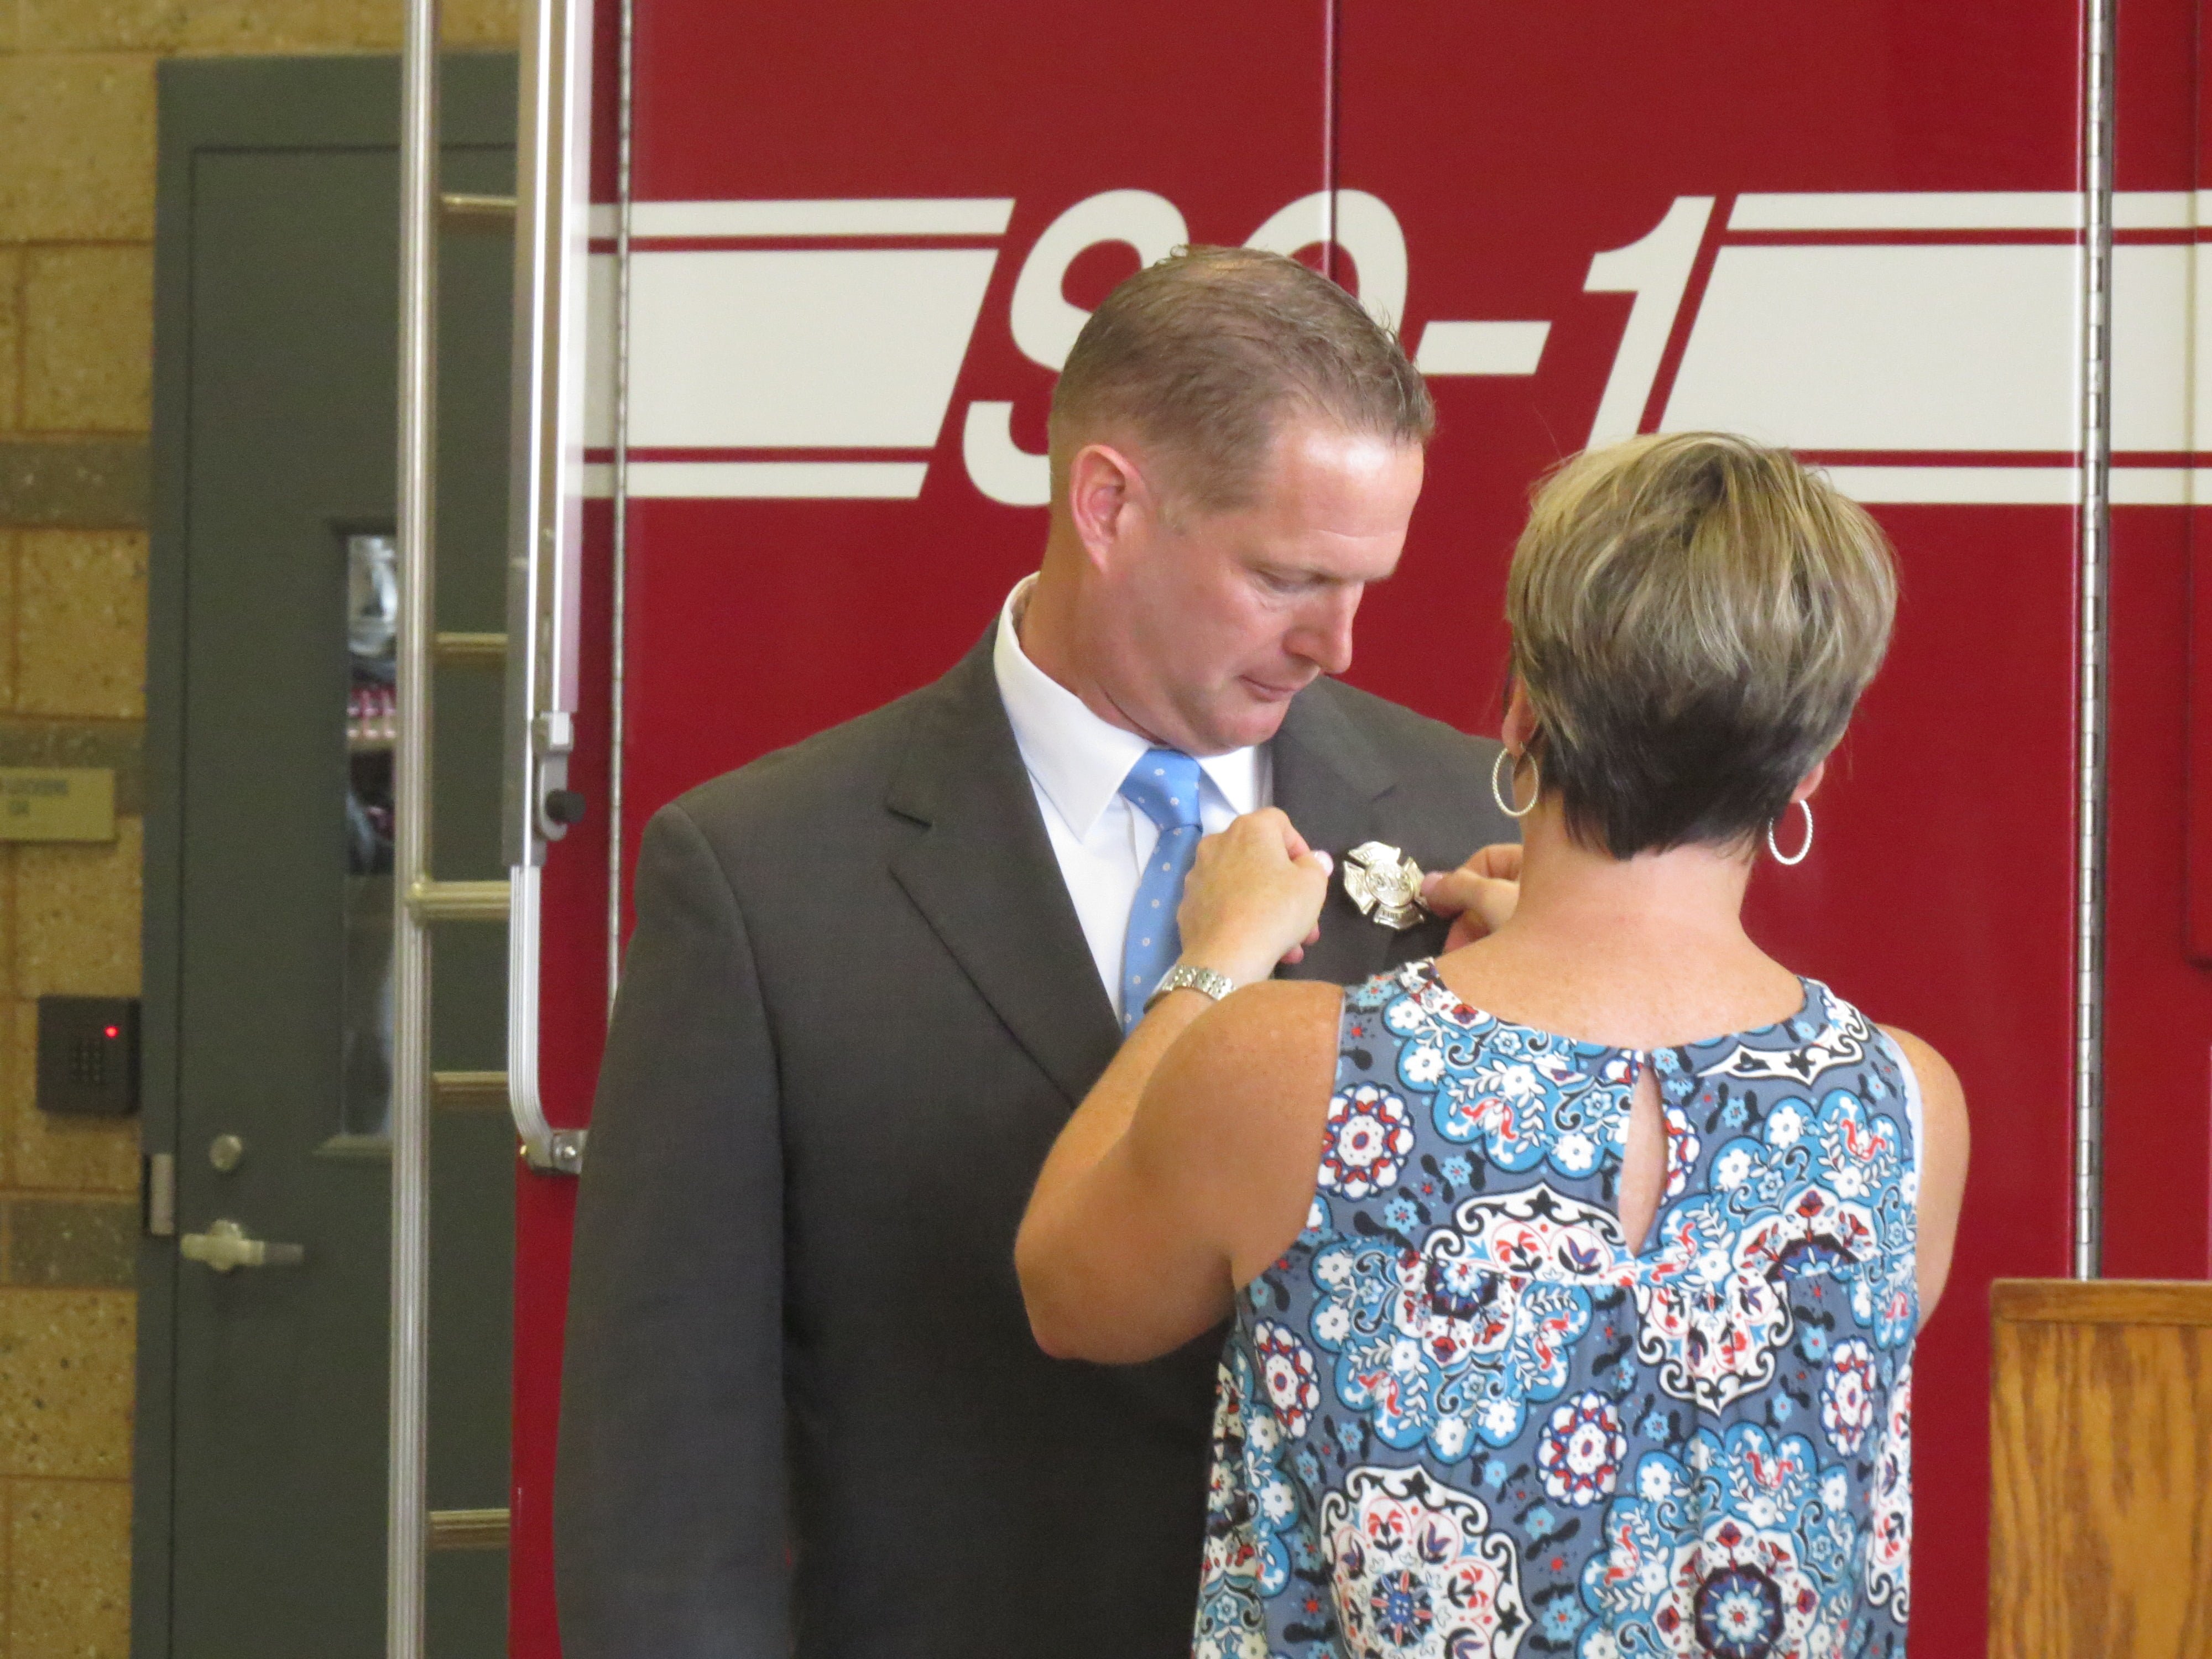 Stephen Brennan gets his badge pinned on after he is sworn in. July 28, 2017. Photo: Devon Bedoya